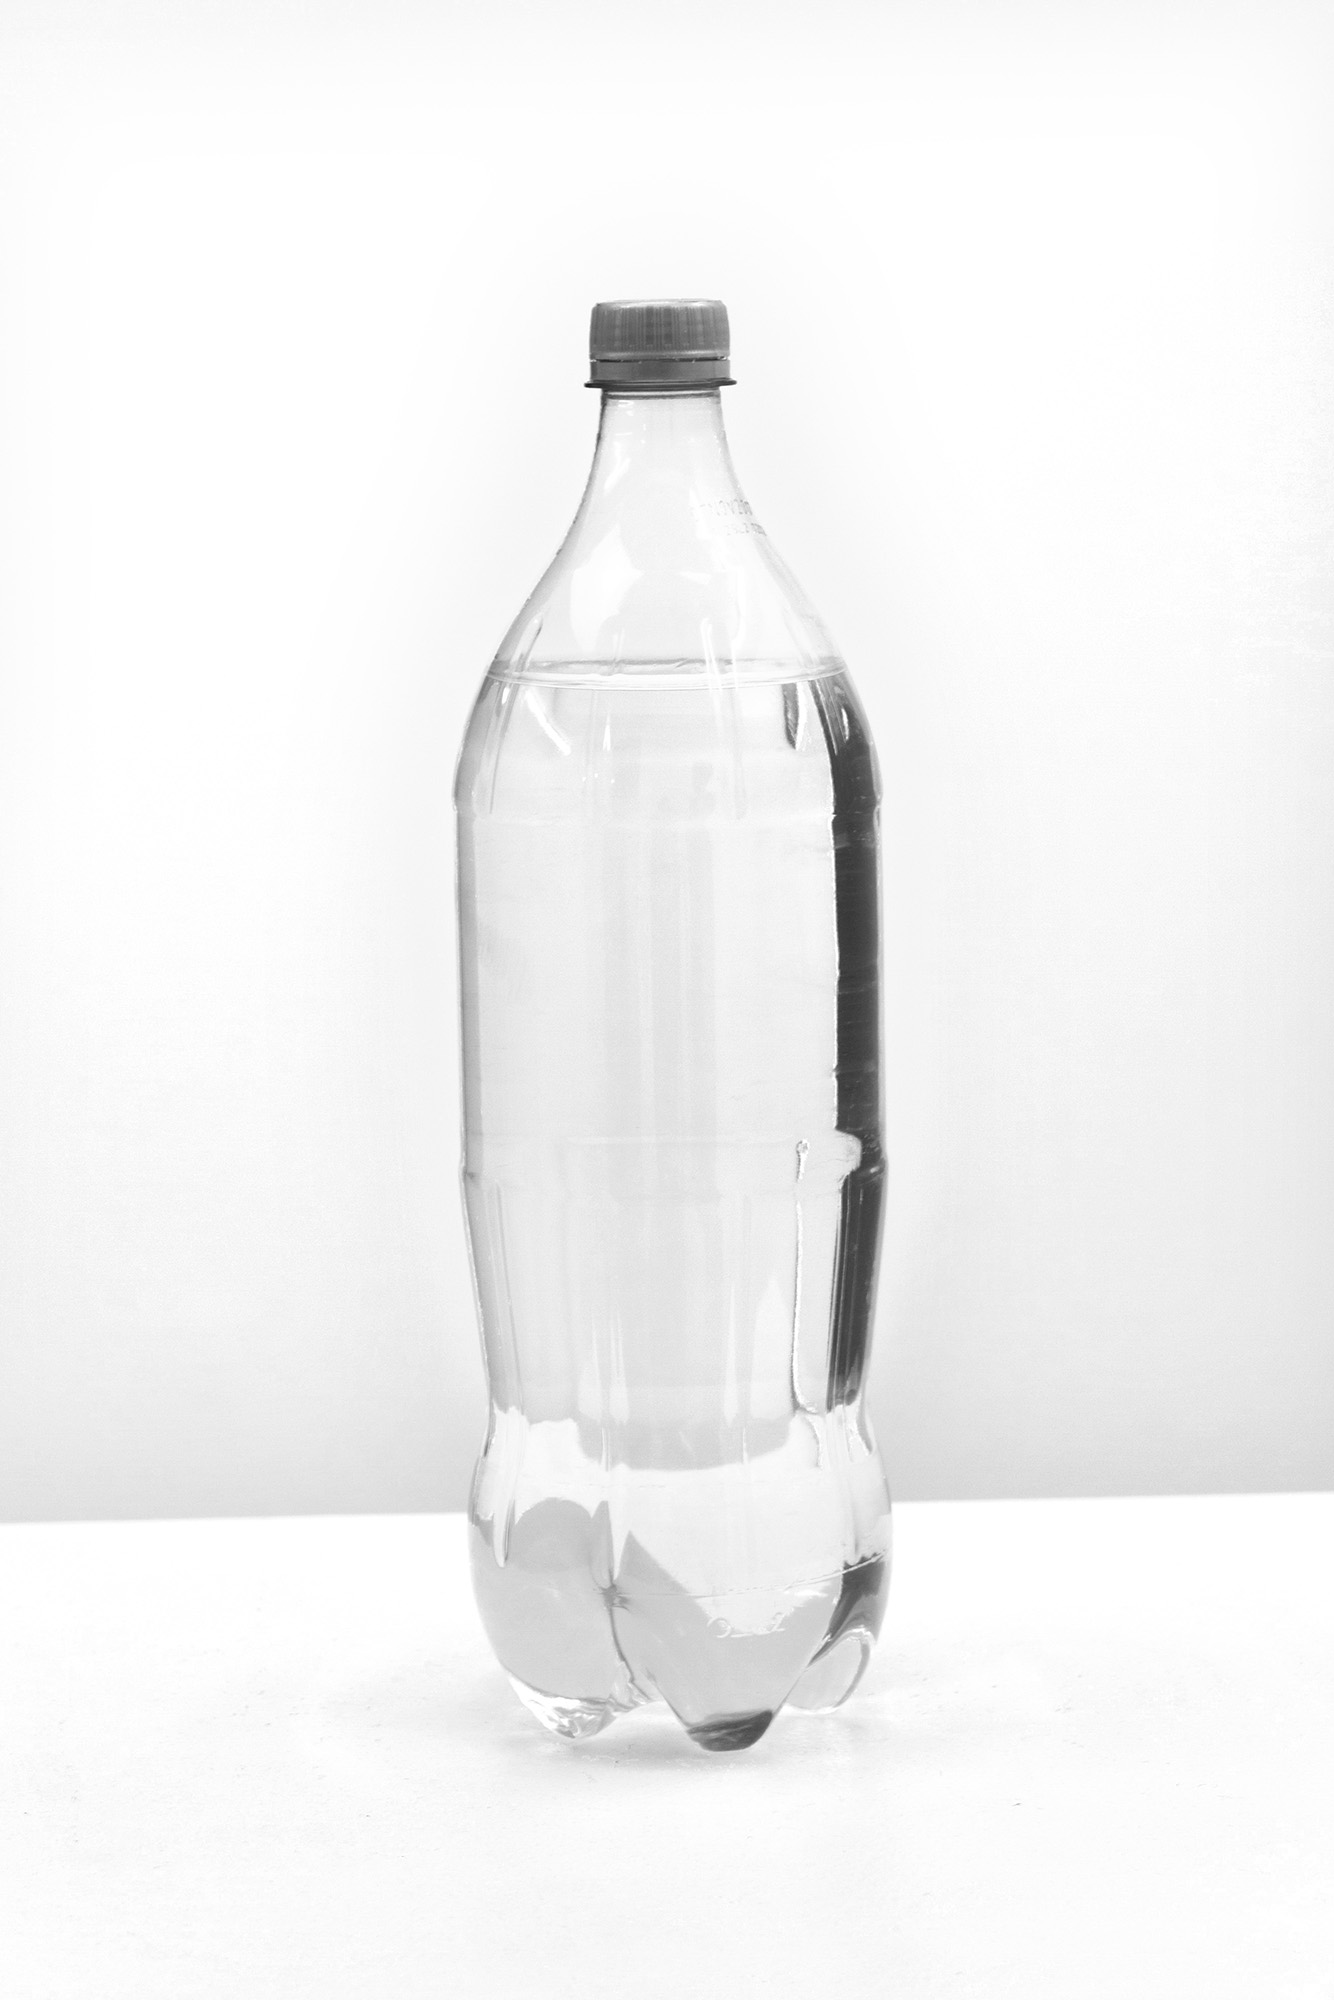 Ella Littwitz, „De Facto”, 2018 woda eksterytorialna, butelka po Coca-Coli, 31 × 8,5 × 8,5 cm dzięki uprzejmości Harlan Levey Projects (materiały prasowe organizatora)